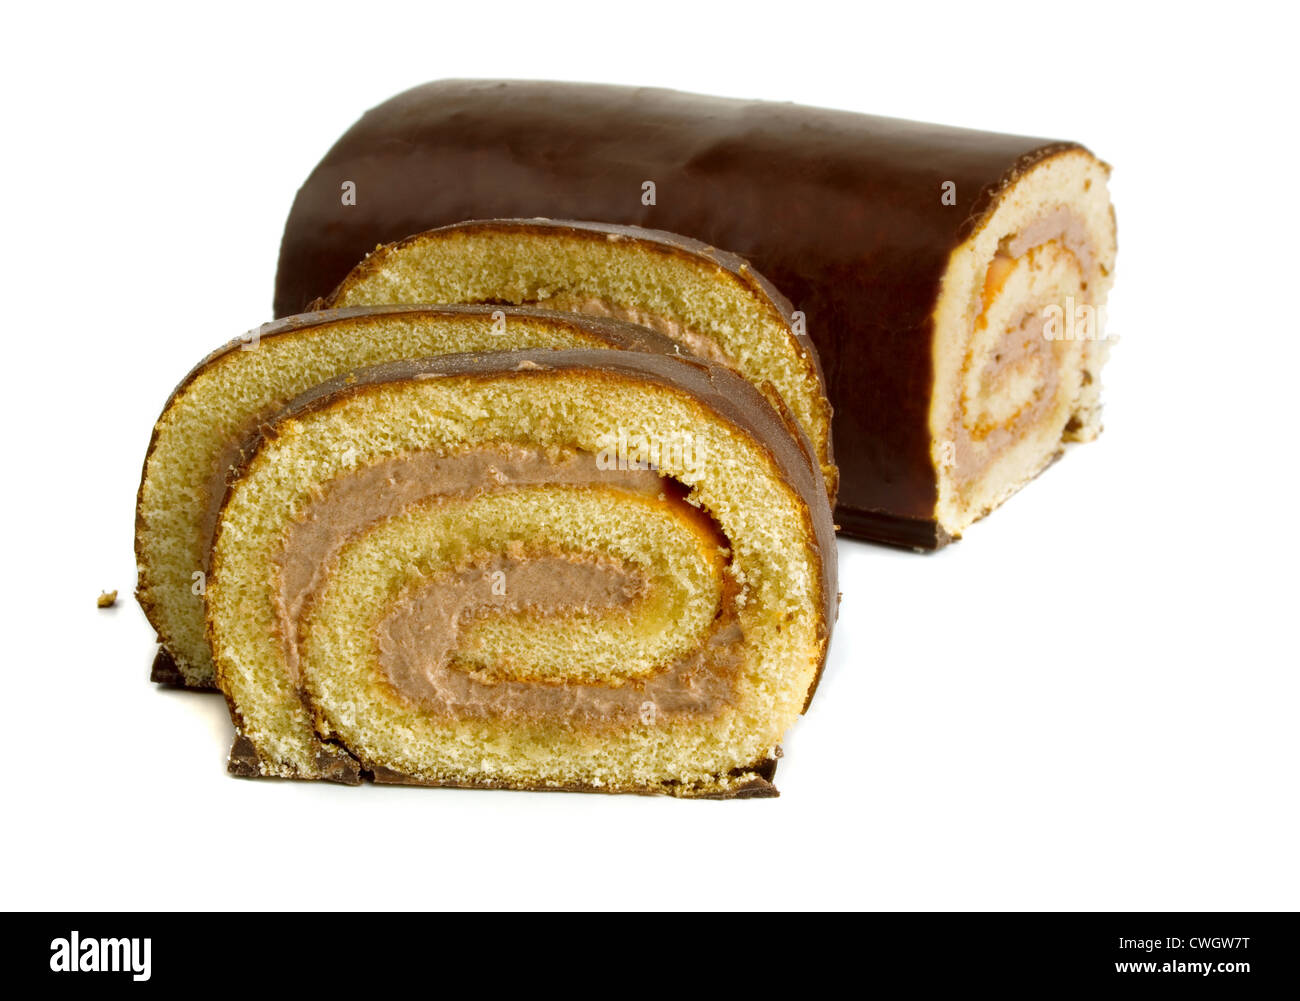 Chocolate glazed roll cake isolated on white Stock Photo